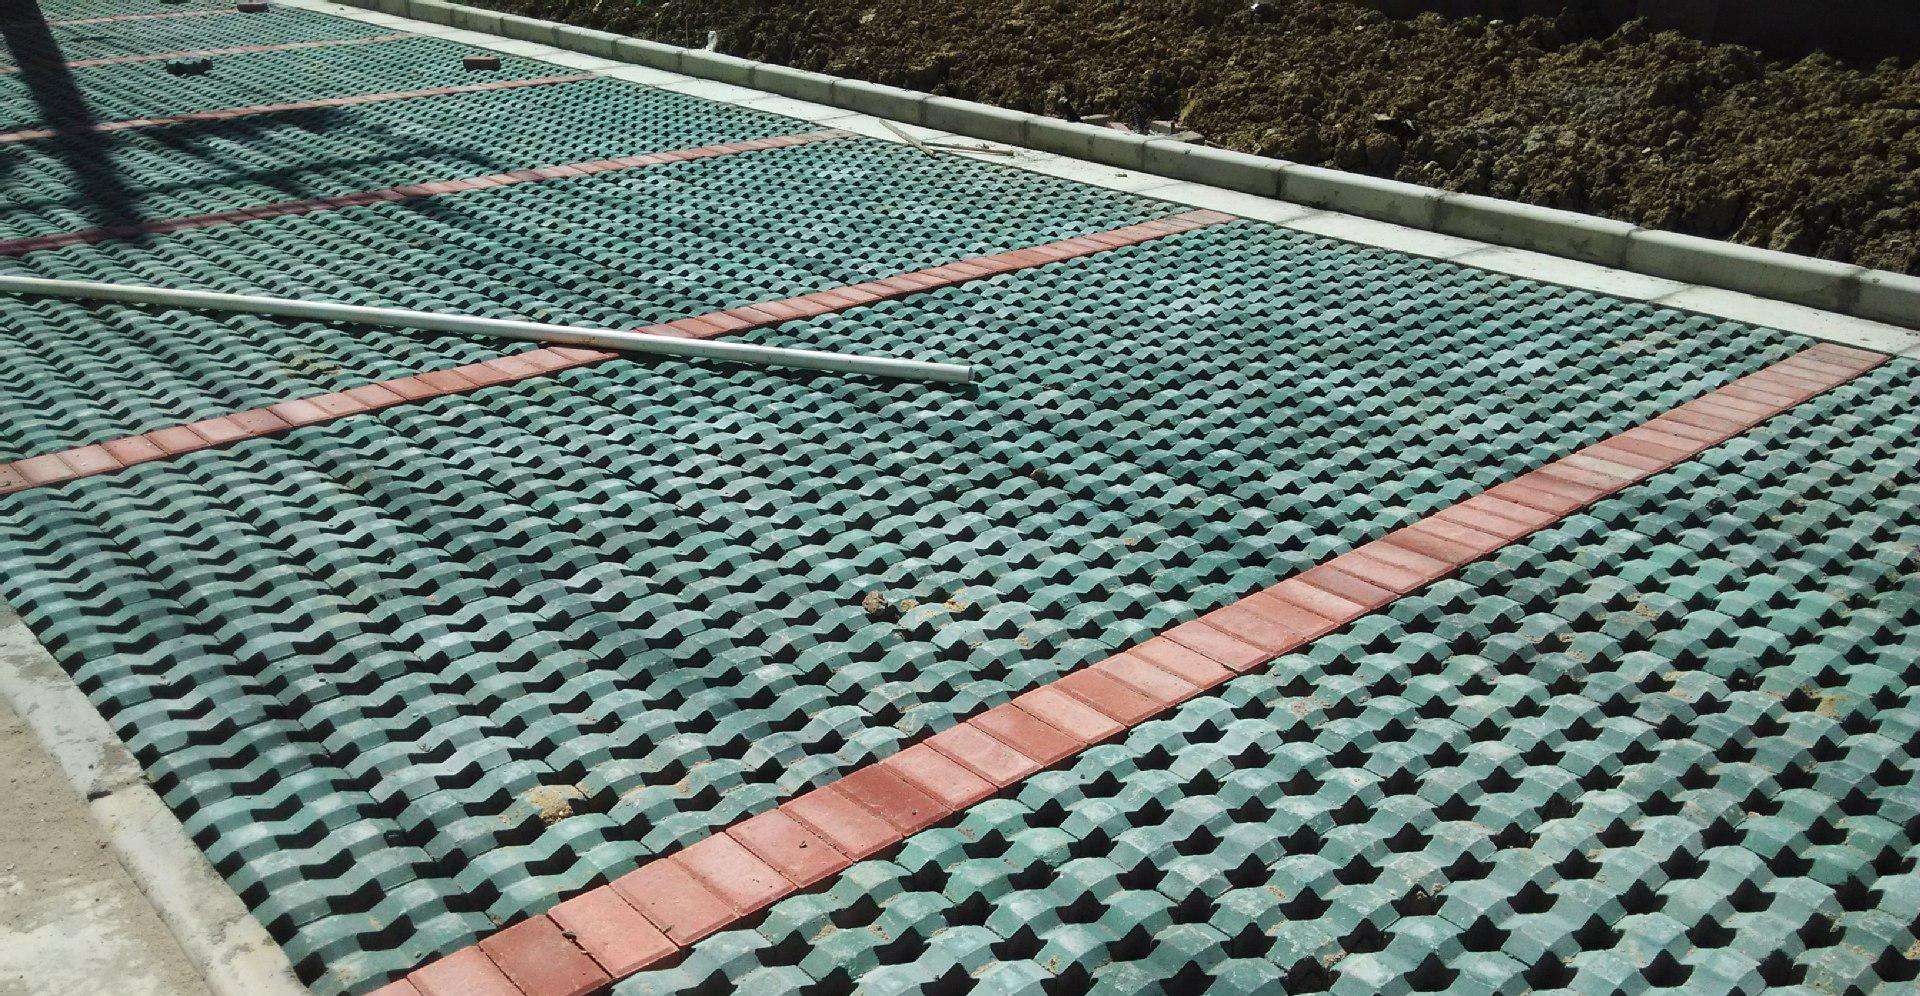 吉林市水泥砖_吉林砖、瓦及砌块-吉林市吉林经济技术开发区宏鑫水泥制品厂